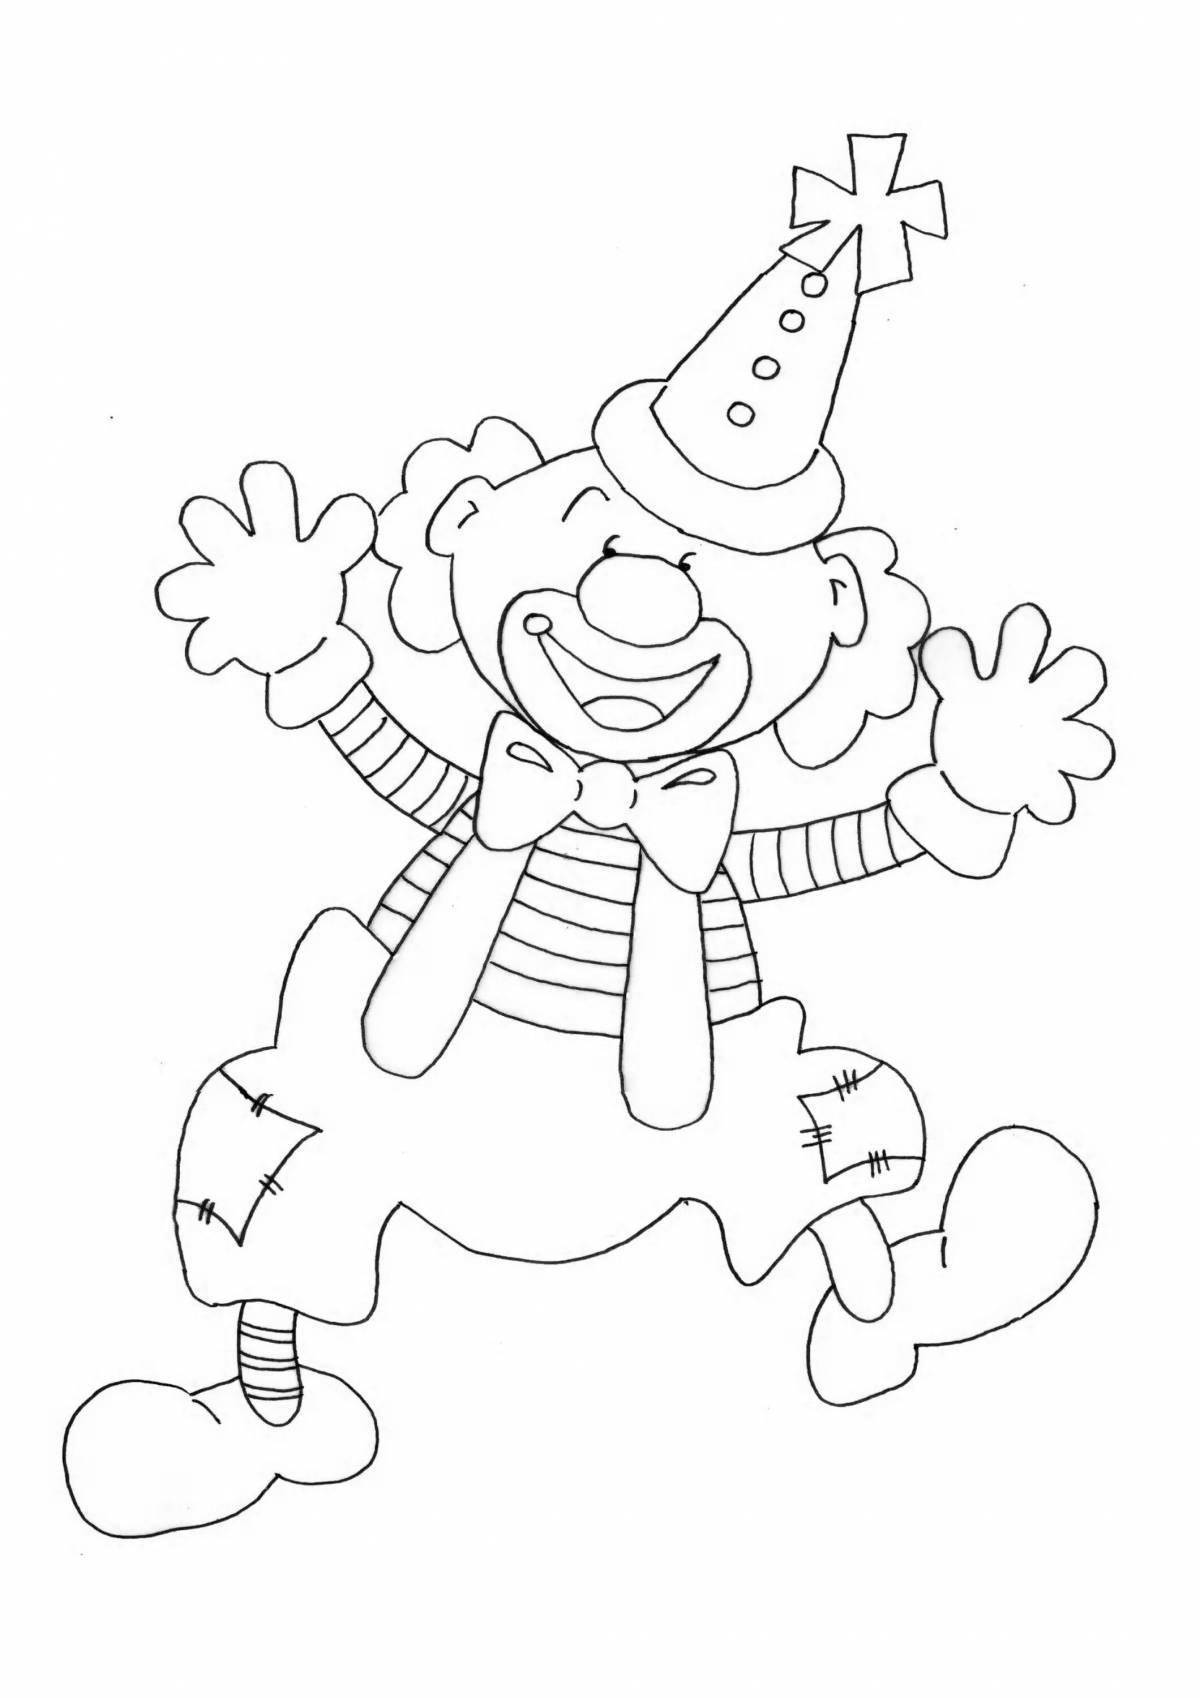 Изображение клоуна для детей раскраски